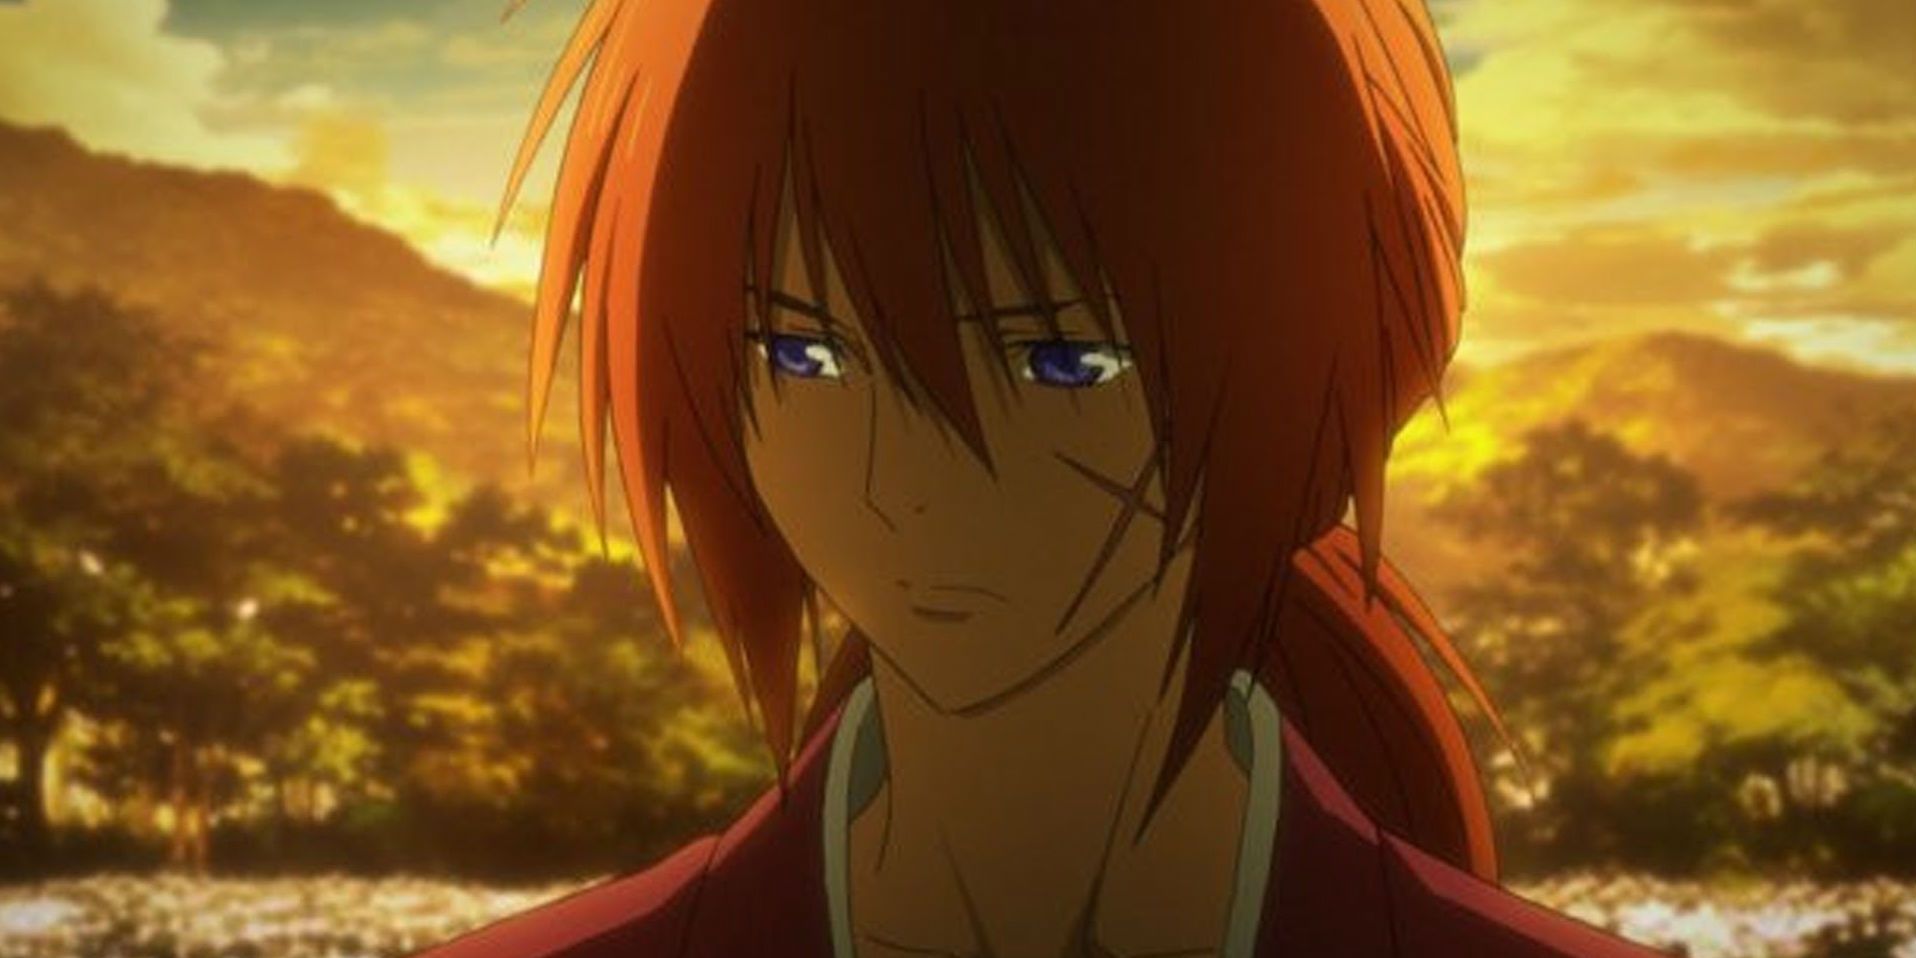 Himura Kenshin looking concerned in Rurouni Kenshin